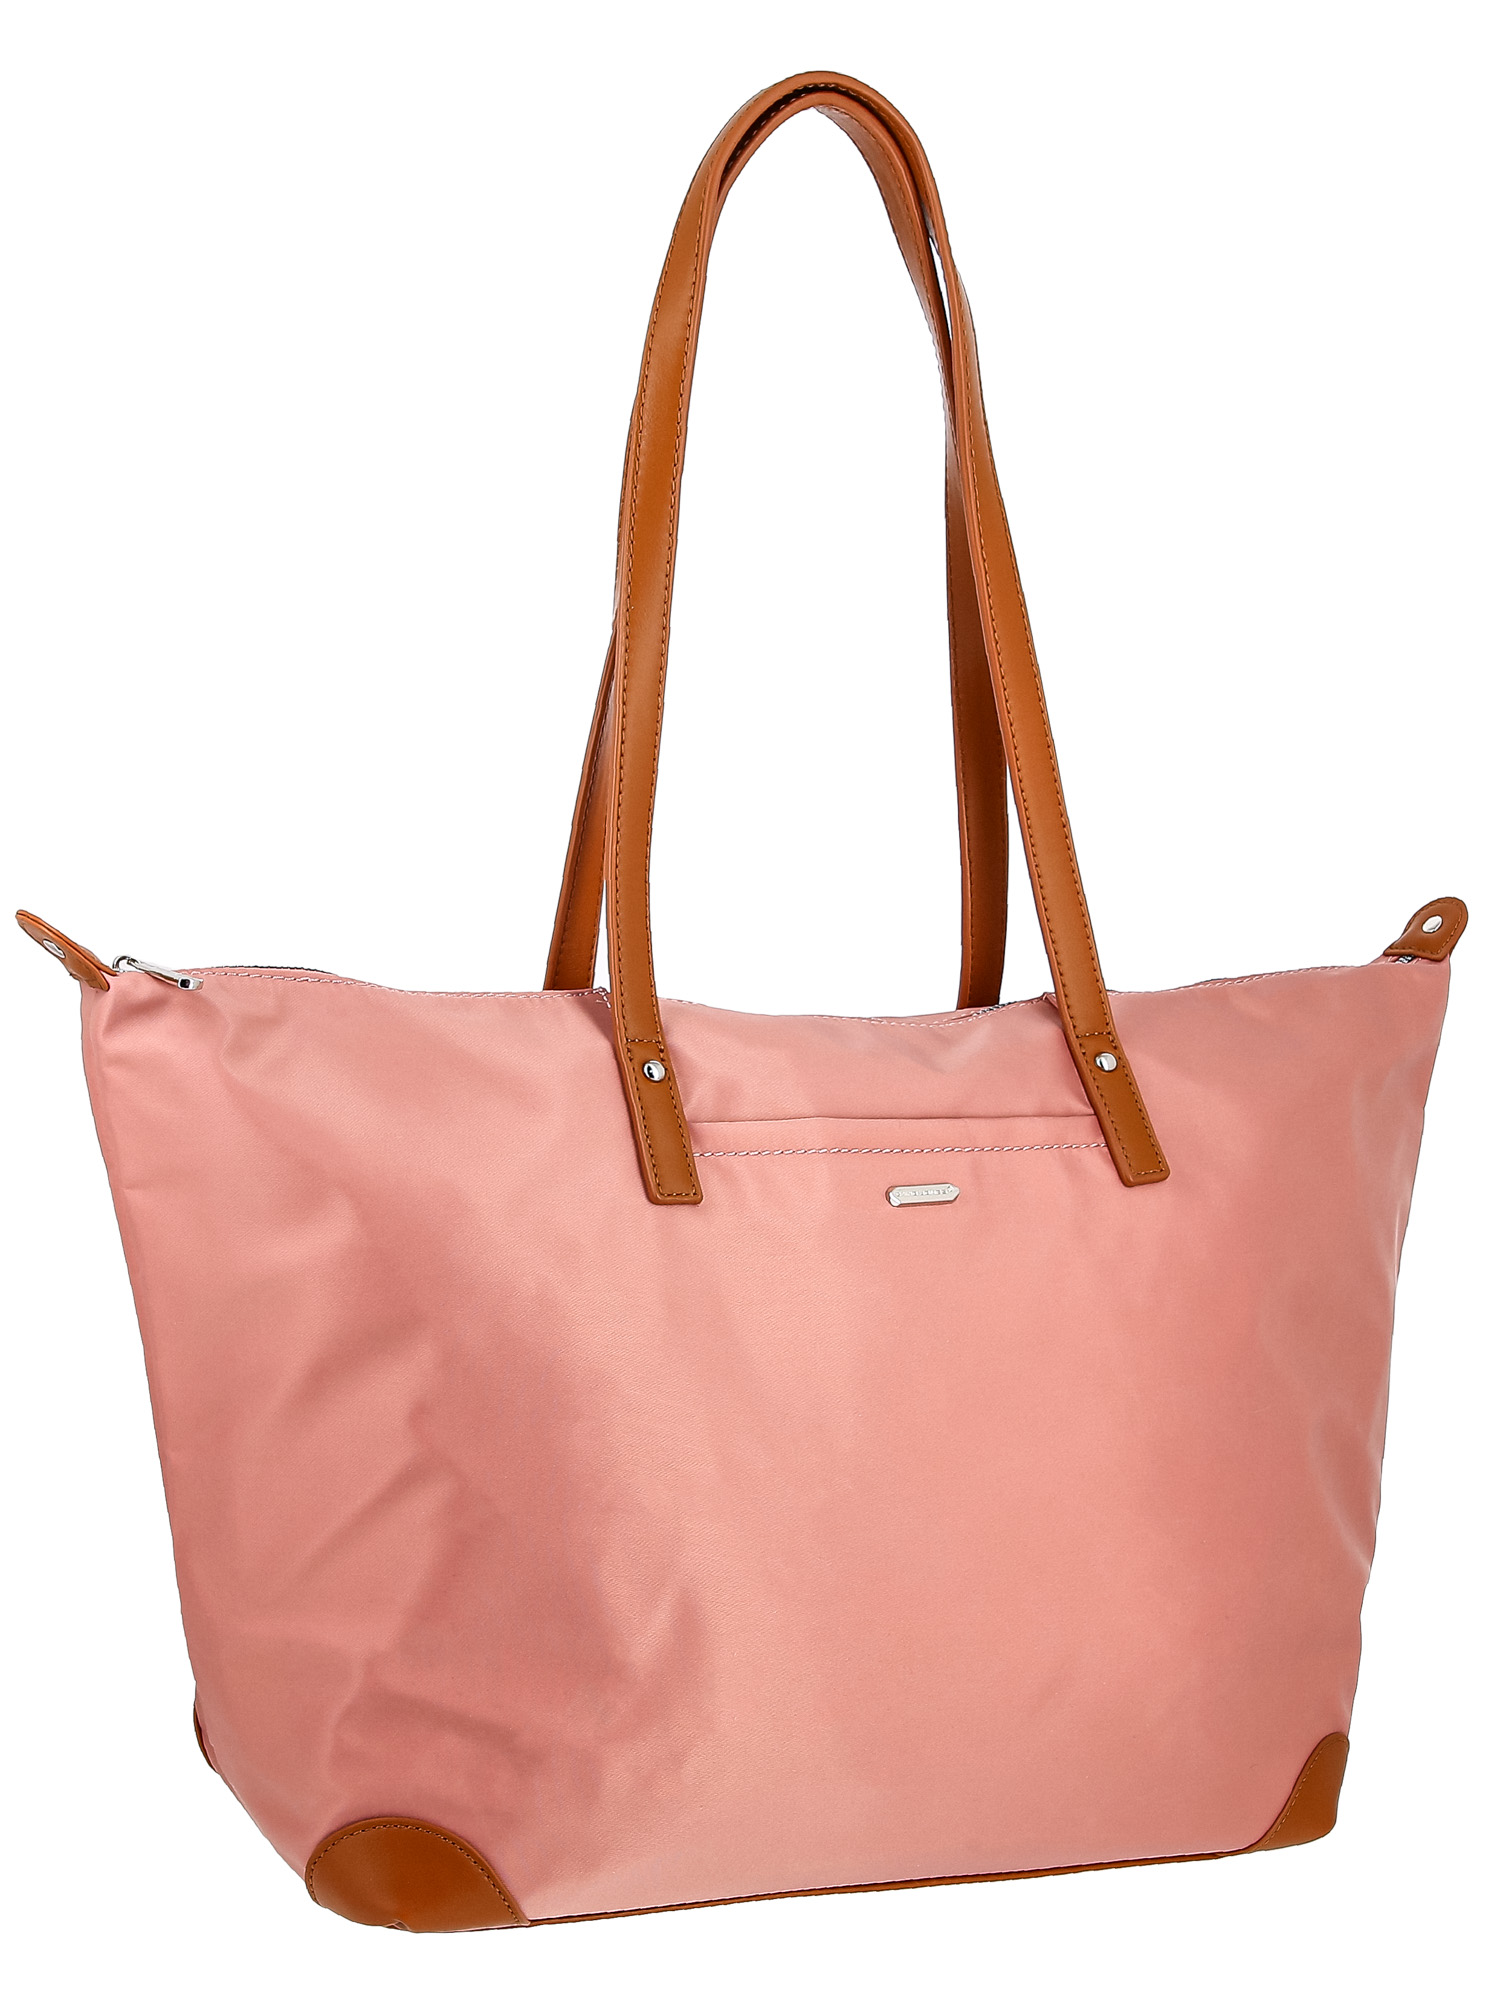 Пляжная сумка пляжная сумка женская David Jones 6657CMDD, розовый